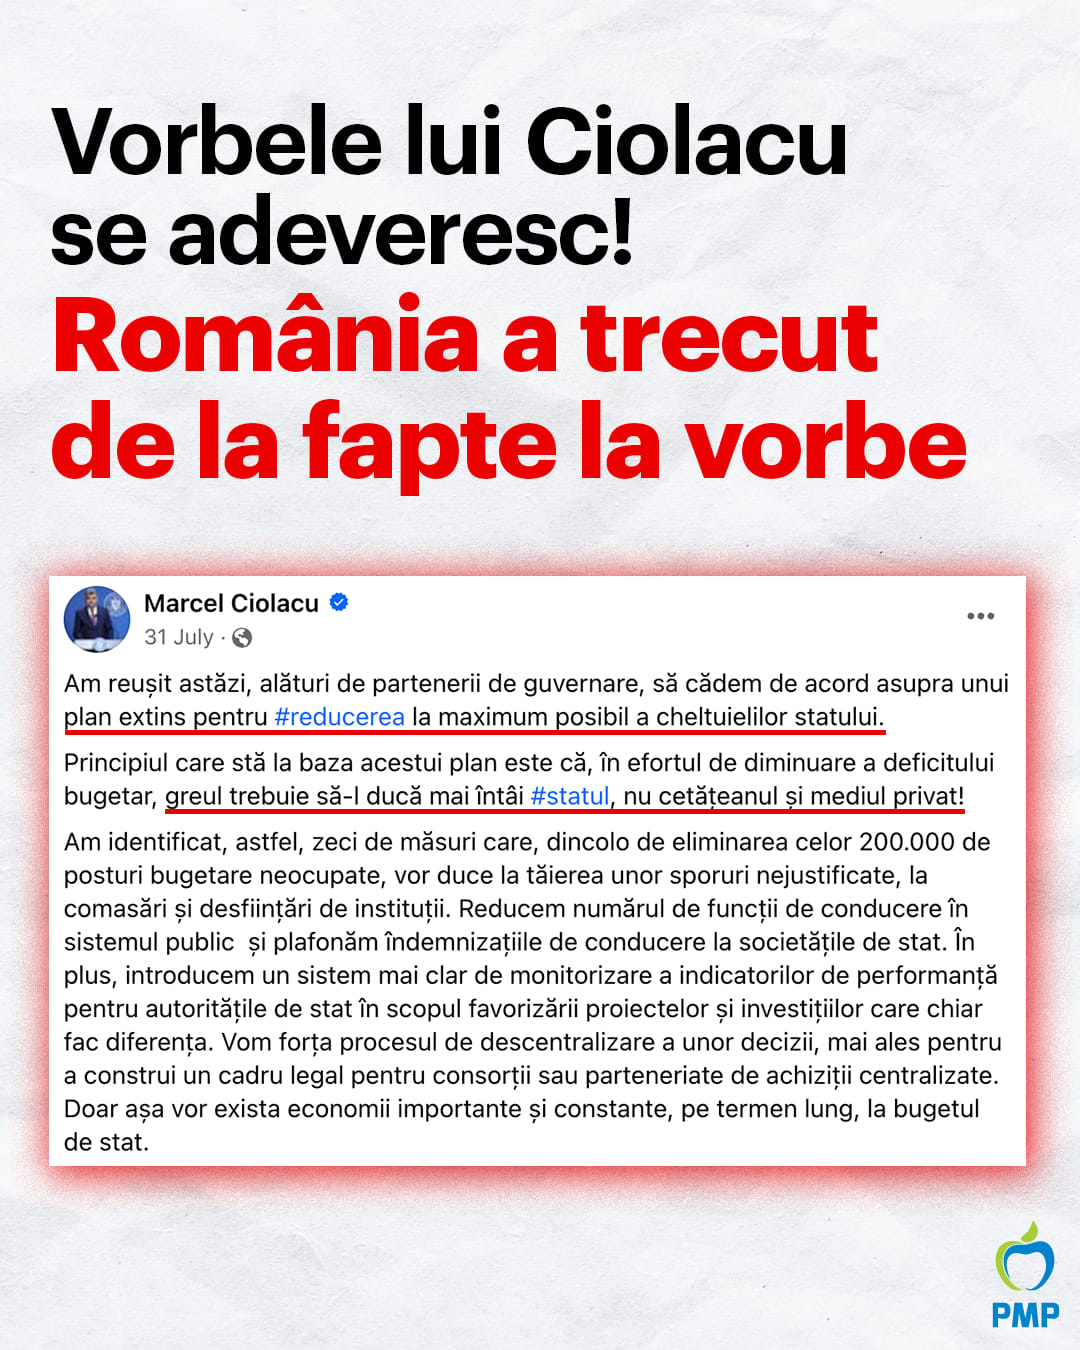 Vorbele lui Ciolacu se adeveresc. România a trecut de la fapte la vorbe